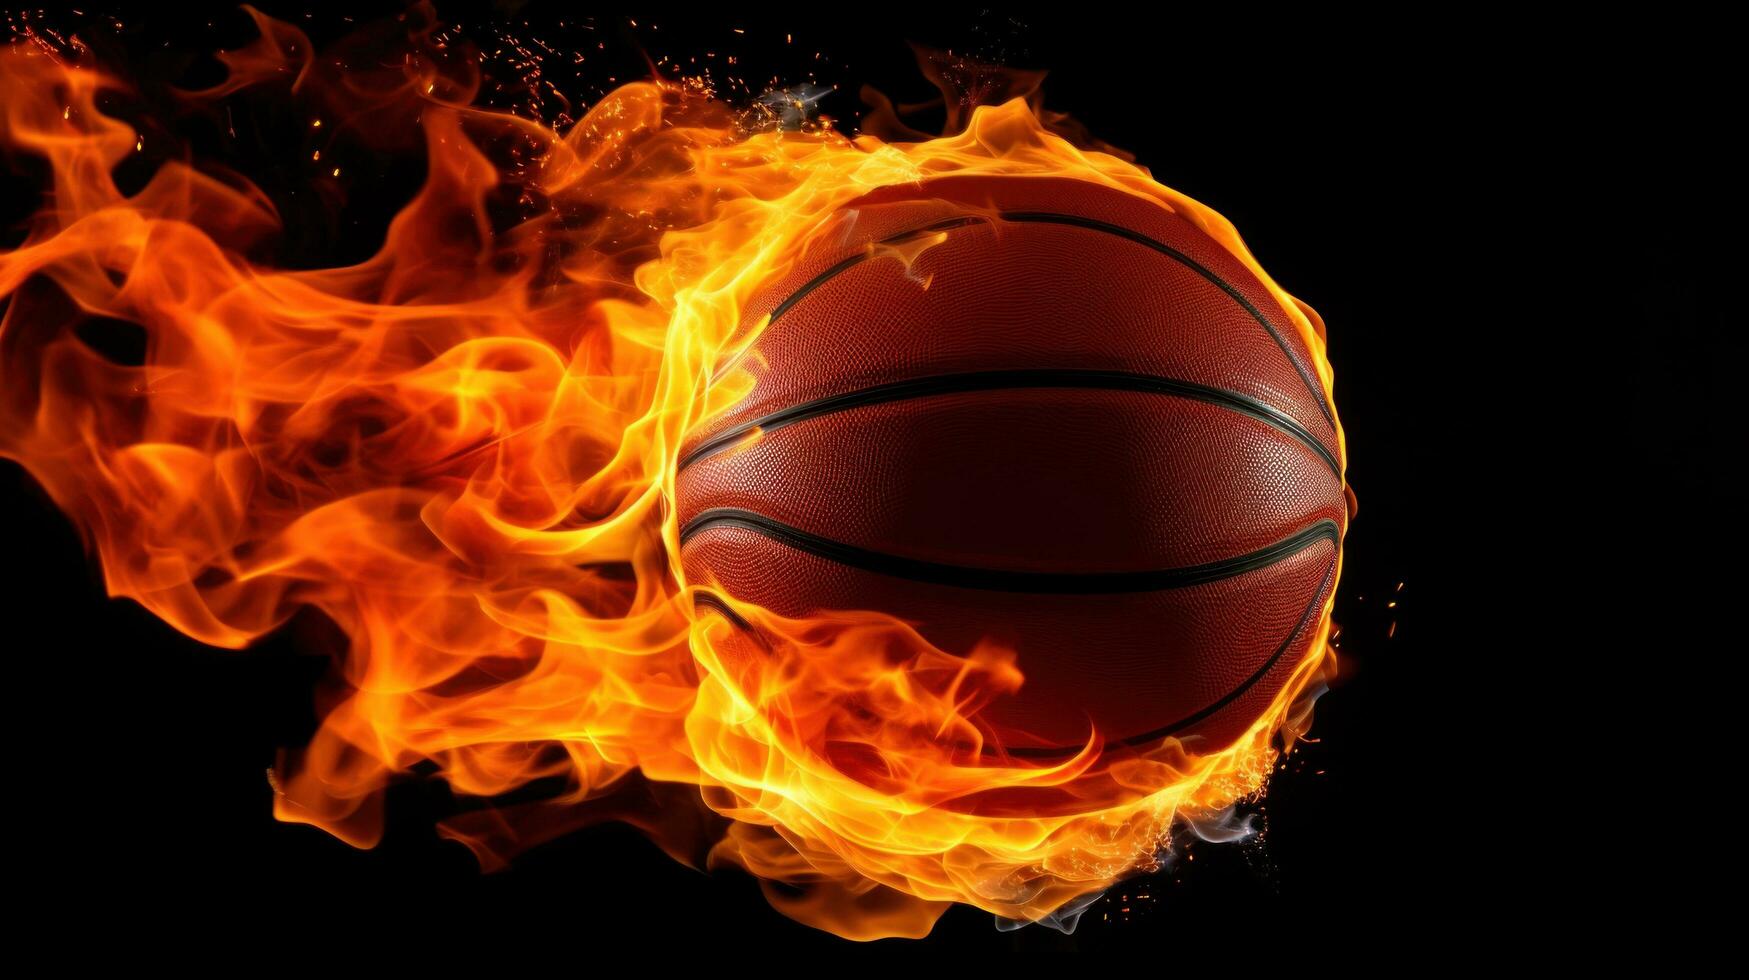 ai gerado a atraente imagem do uma basquetebol bola em fogo, foto